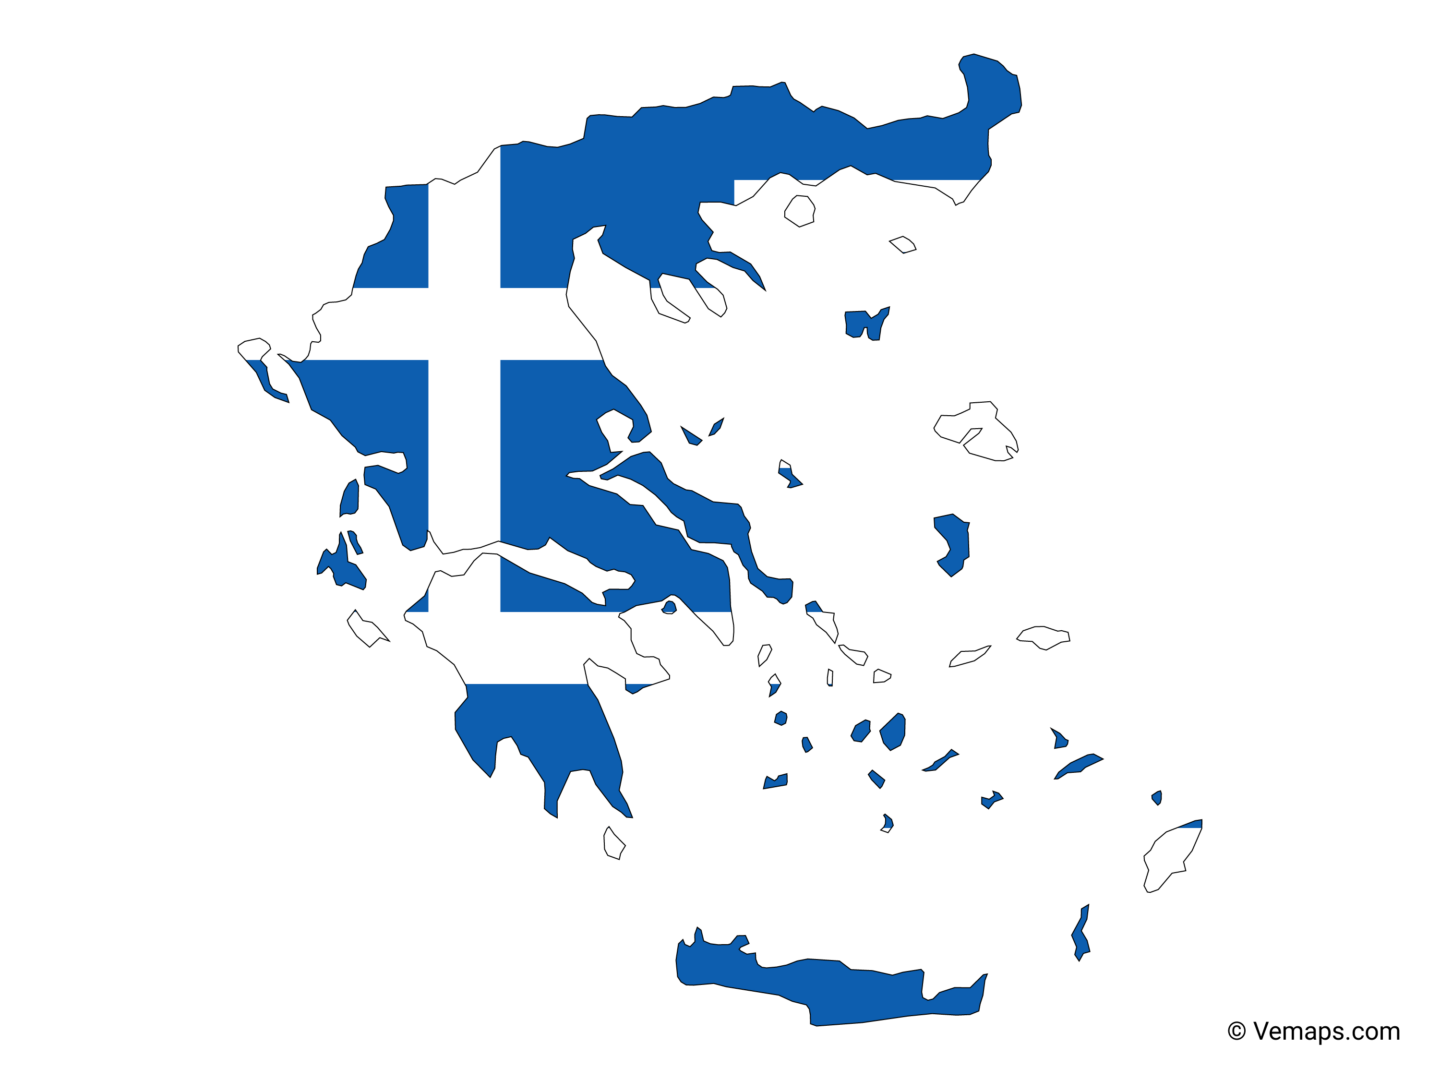 greece-icon